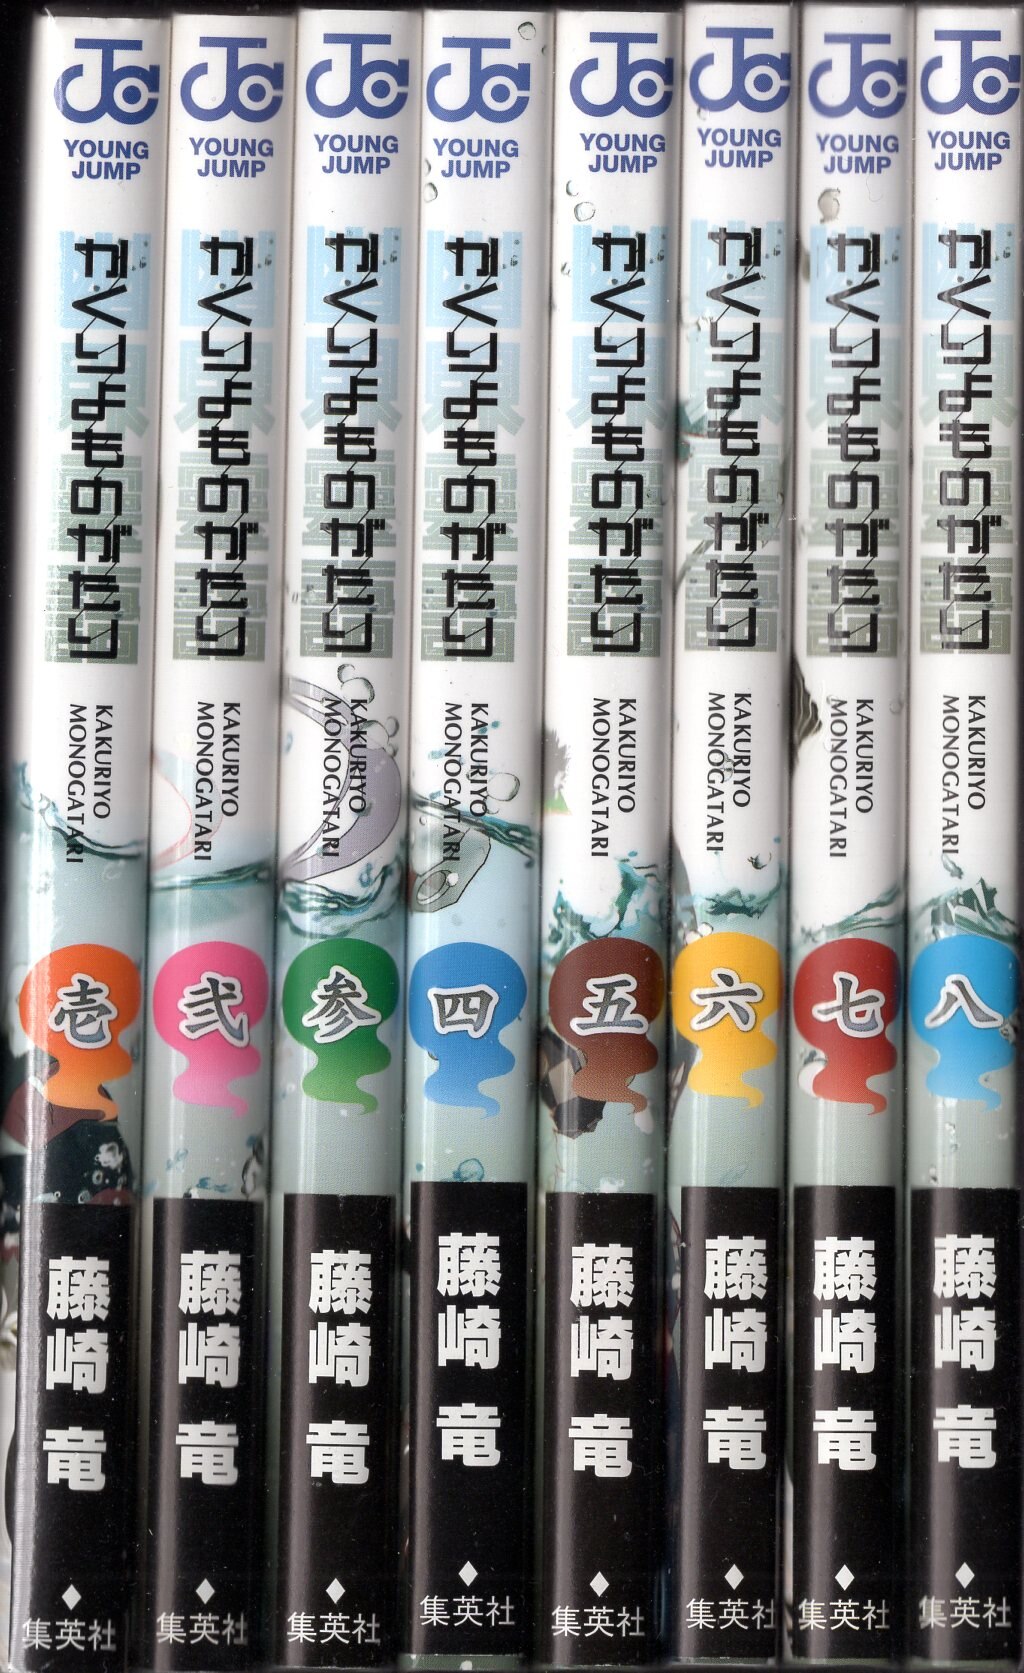 集英社 ジャンプコミックス 藤崎竜 かくりよものがたり 全8巻 初版セット まんだらけ Mandarake